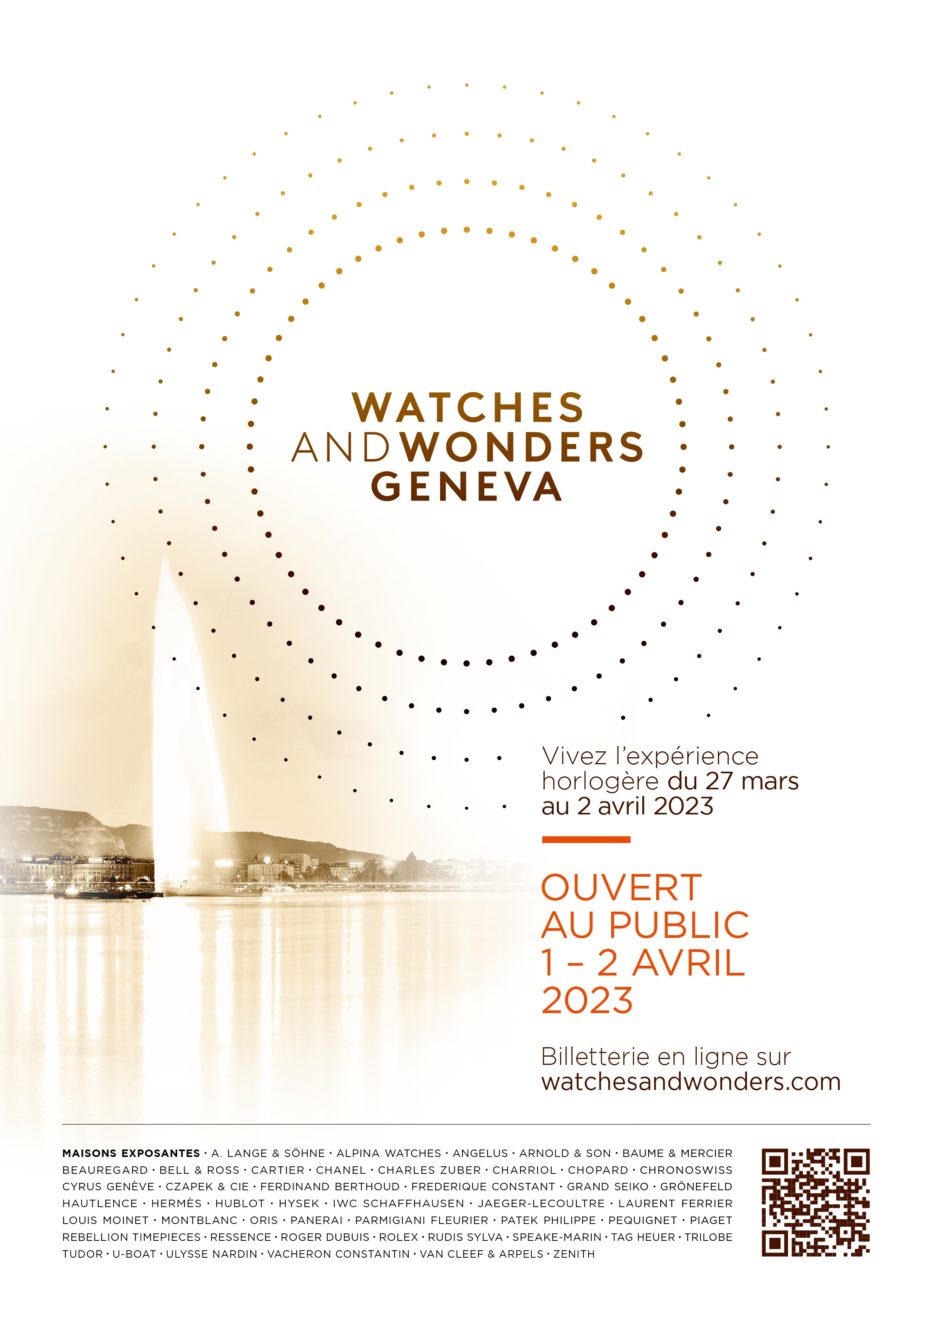 Bulgari - You Are Cordially Invited: Bulgari Event Geneva 27-March-2023